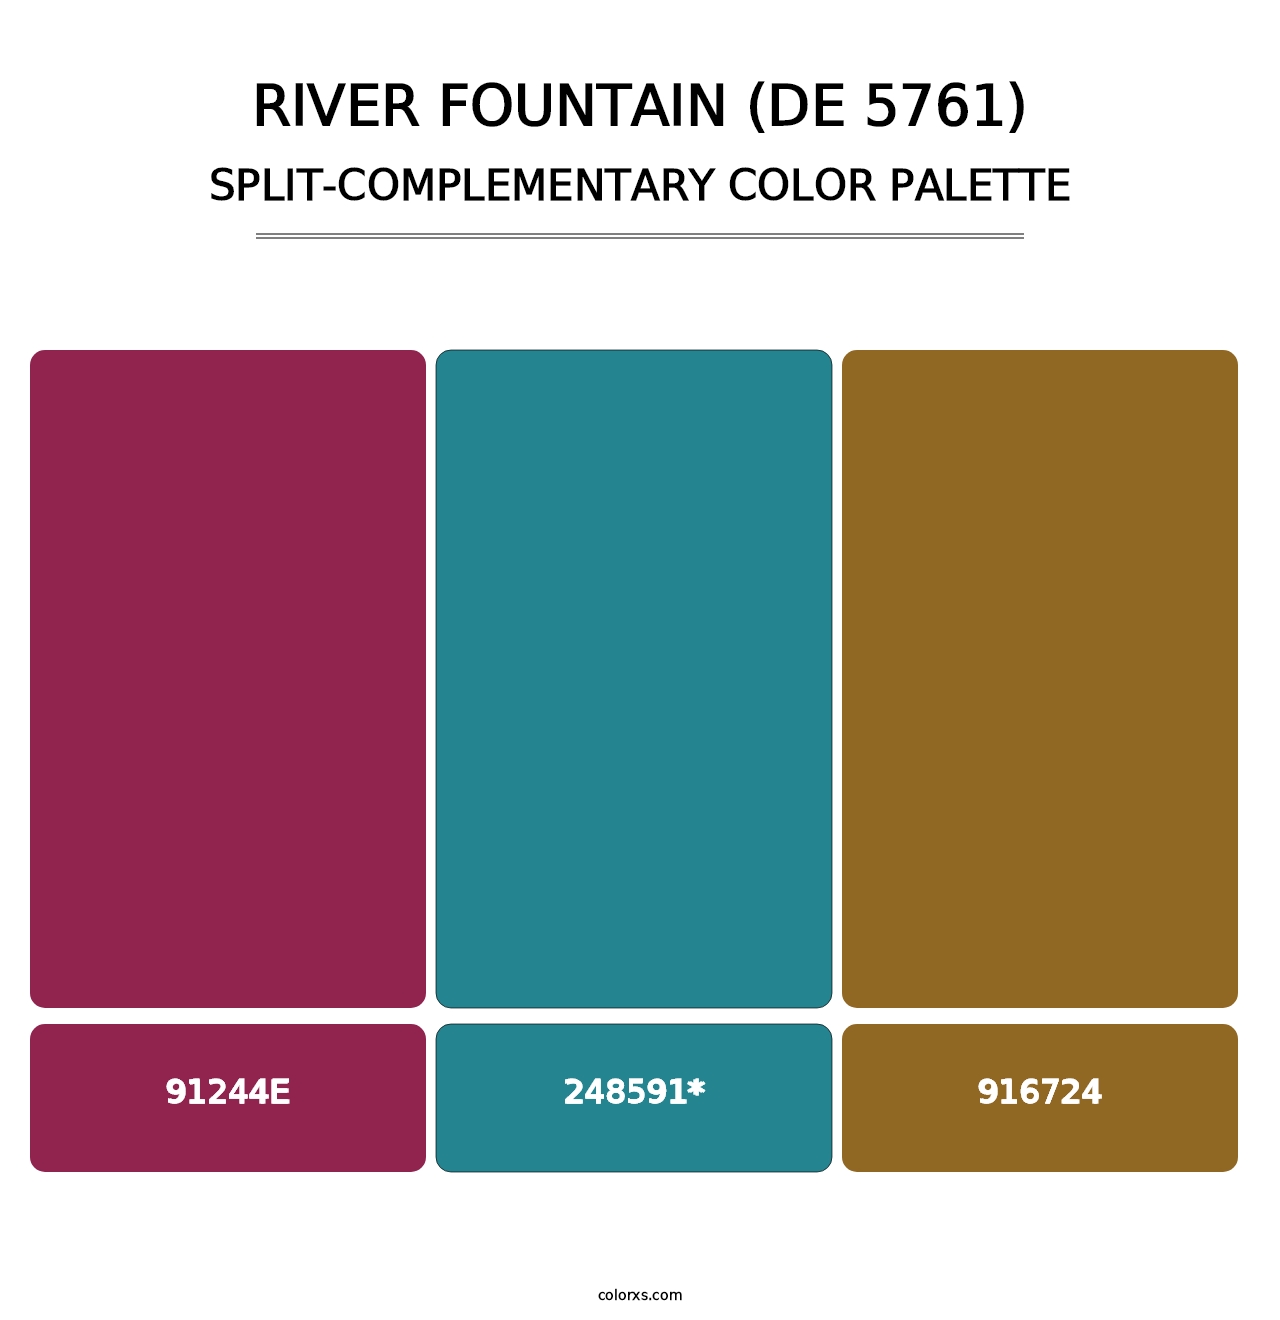 River Fountain (DE 5761) - Split-Complementary Color Palette